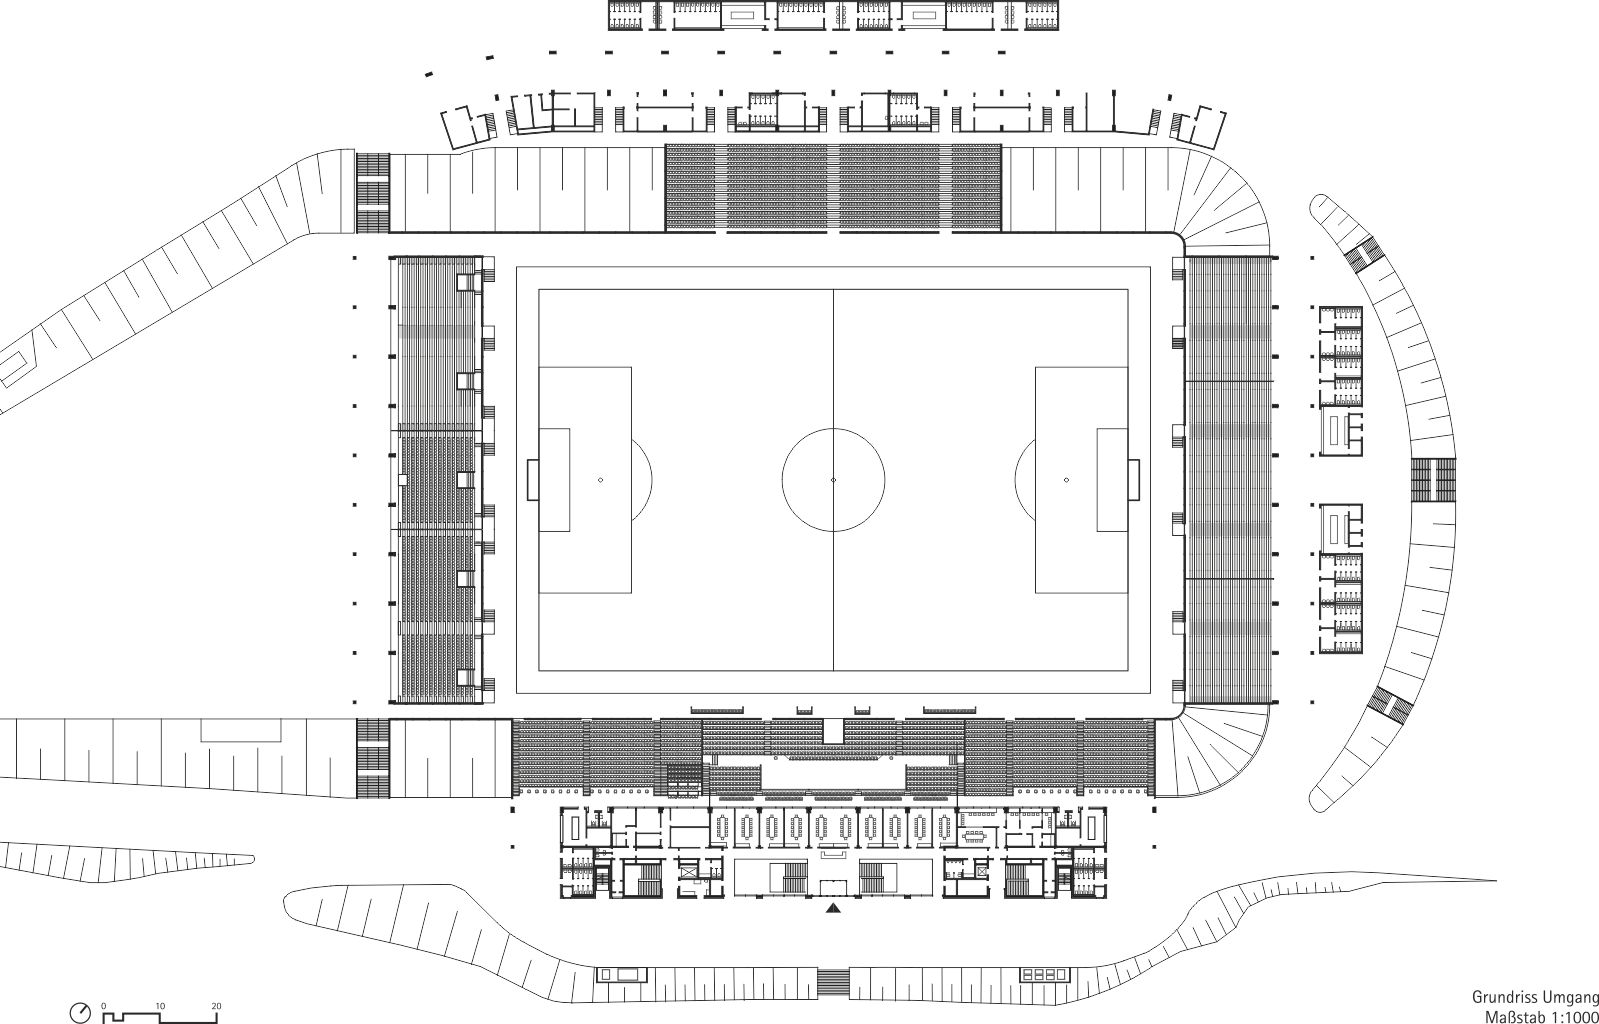 Ludwigspark Stadium